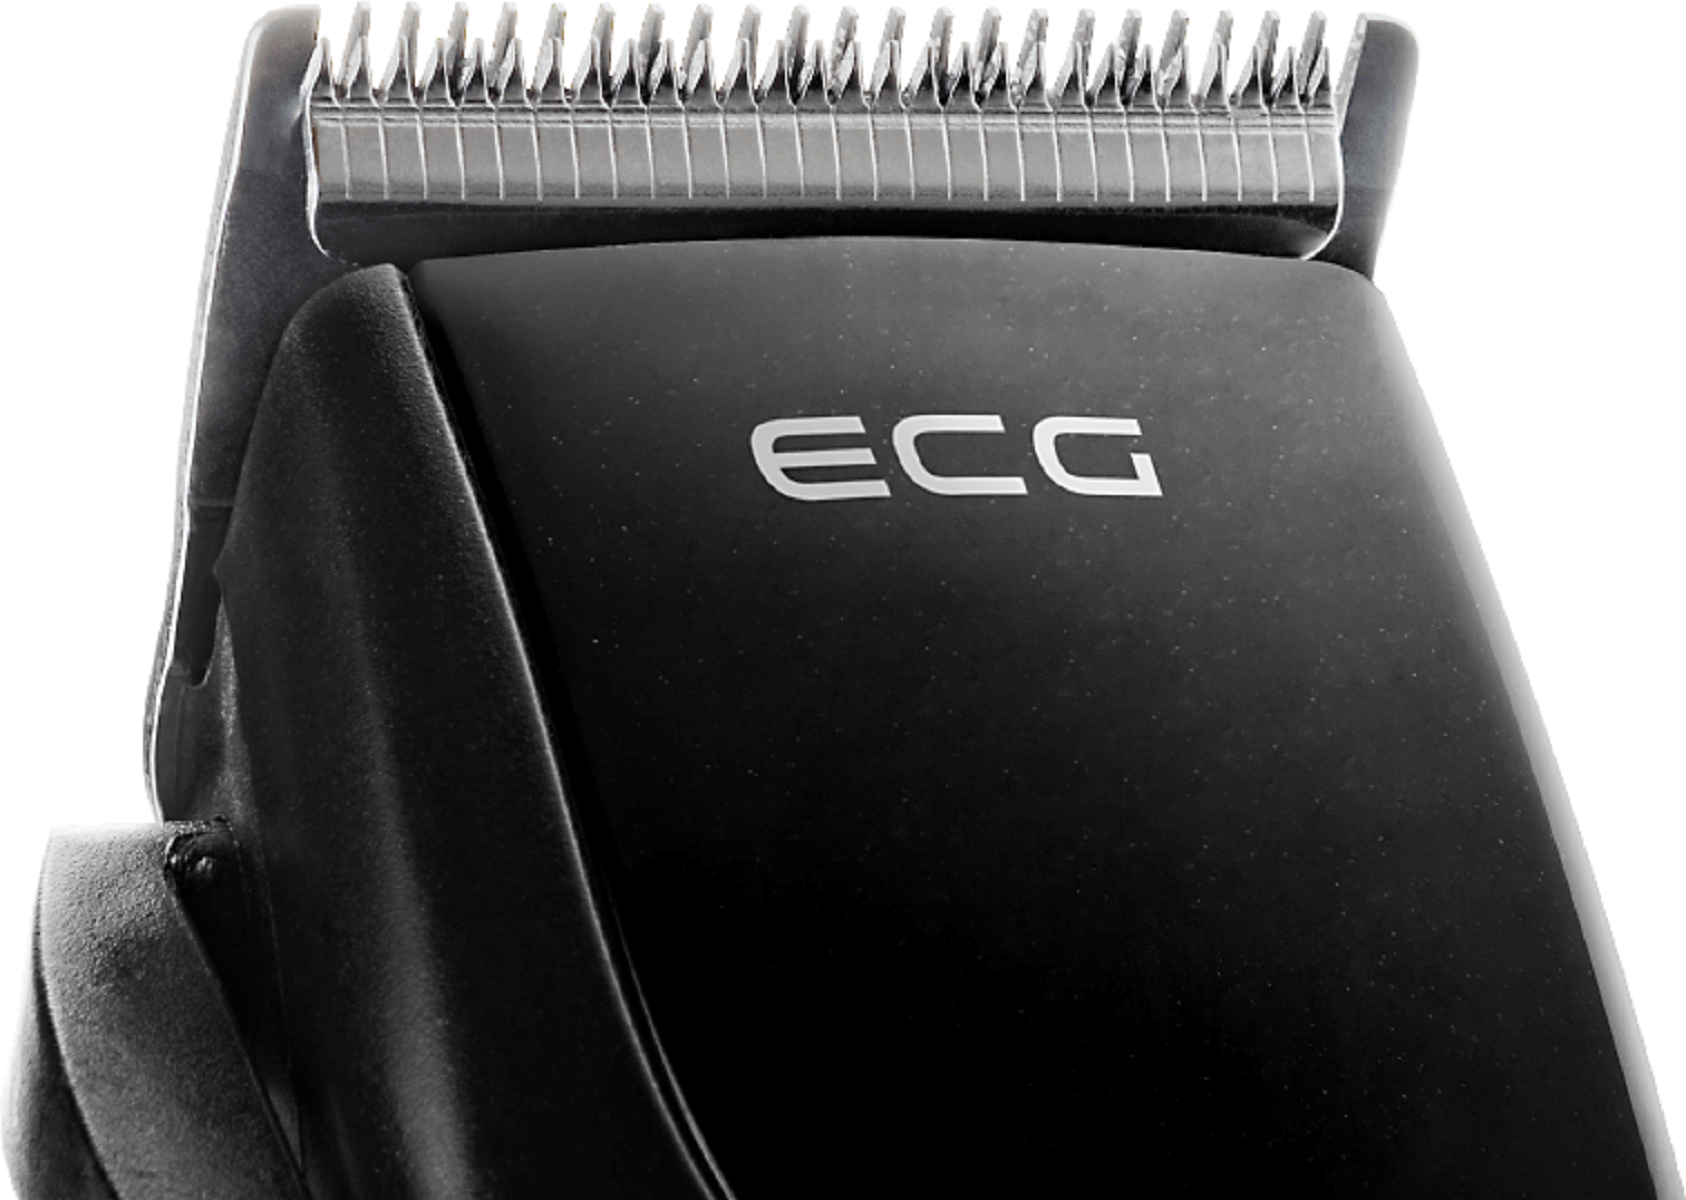 ECG ZS Klingen Stahl | Black aus Haarschneider Schwarz rostfreiem Schnittbreite | mm 1020 | - 2,8 0,8